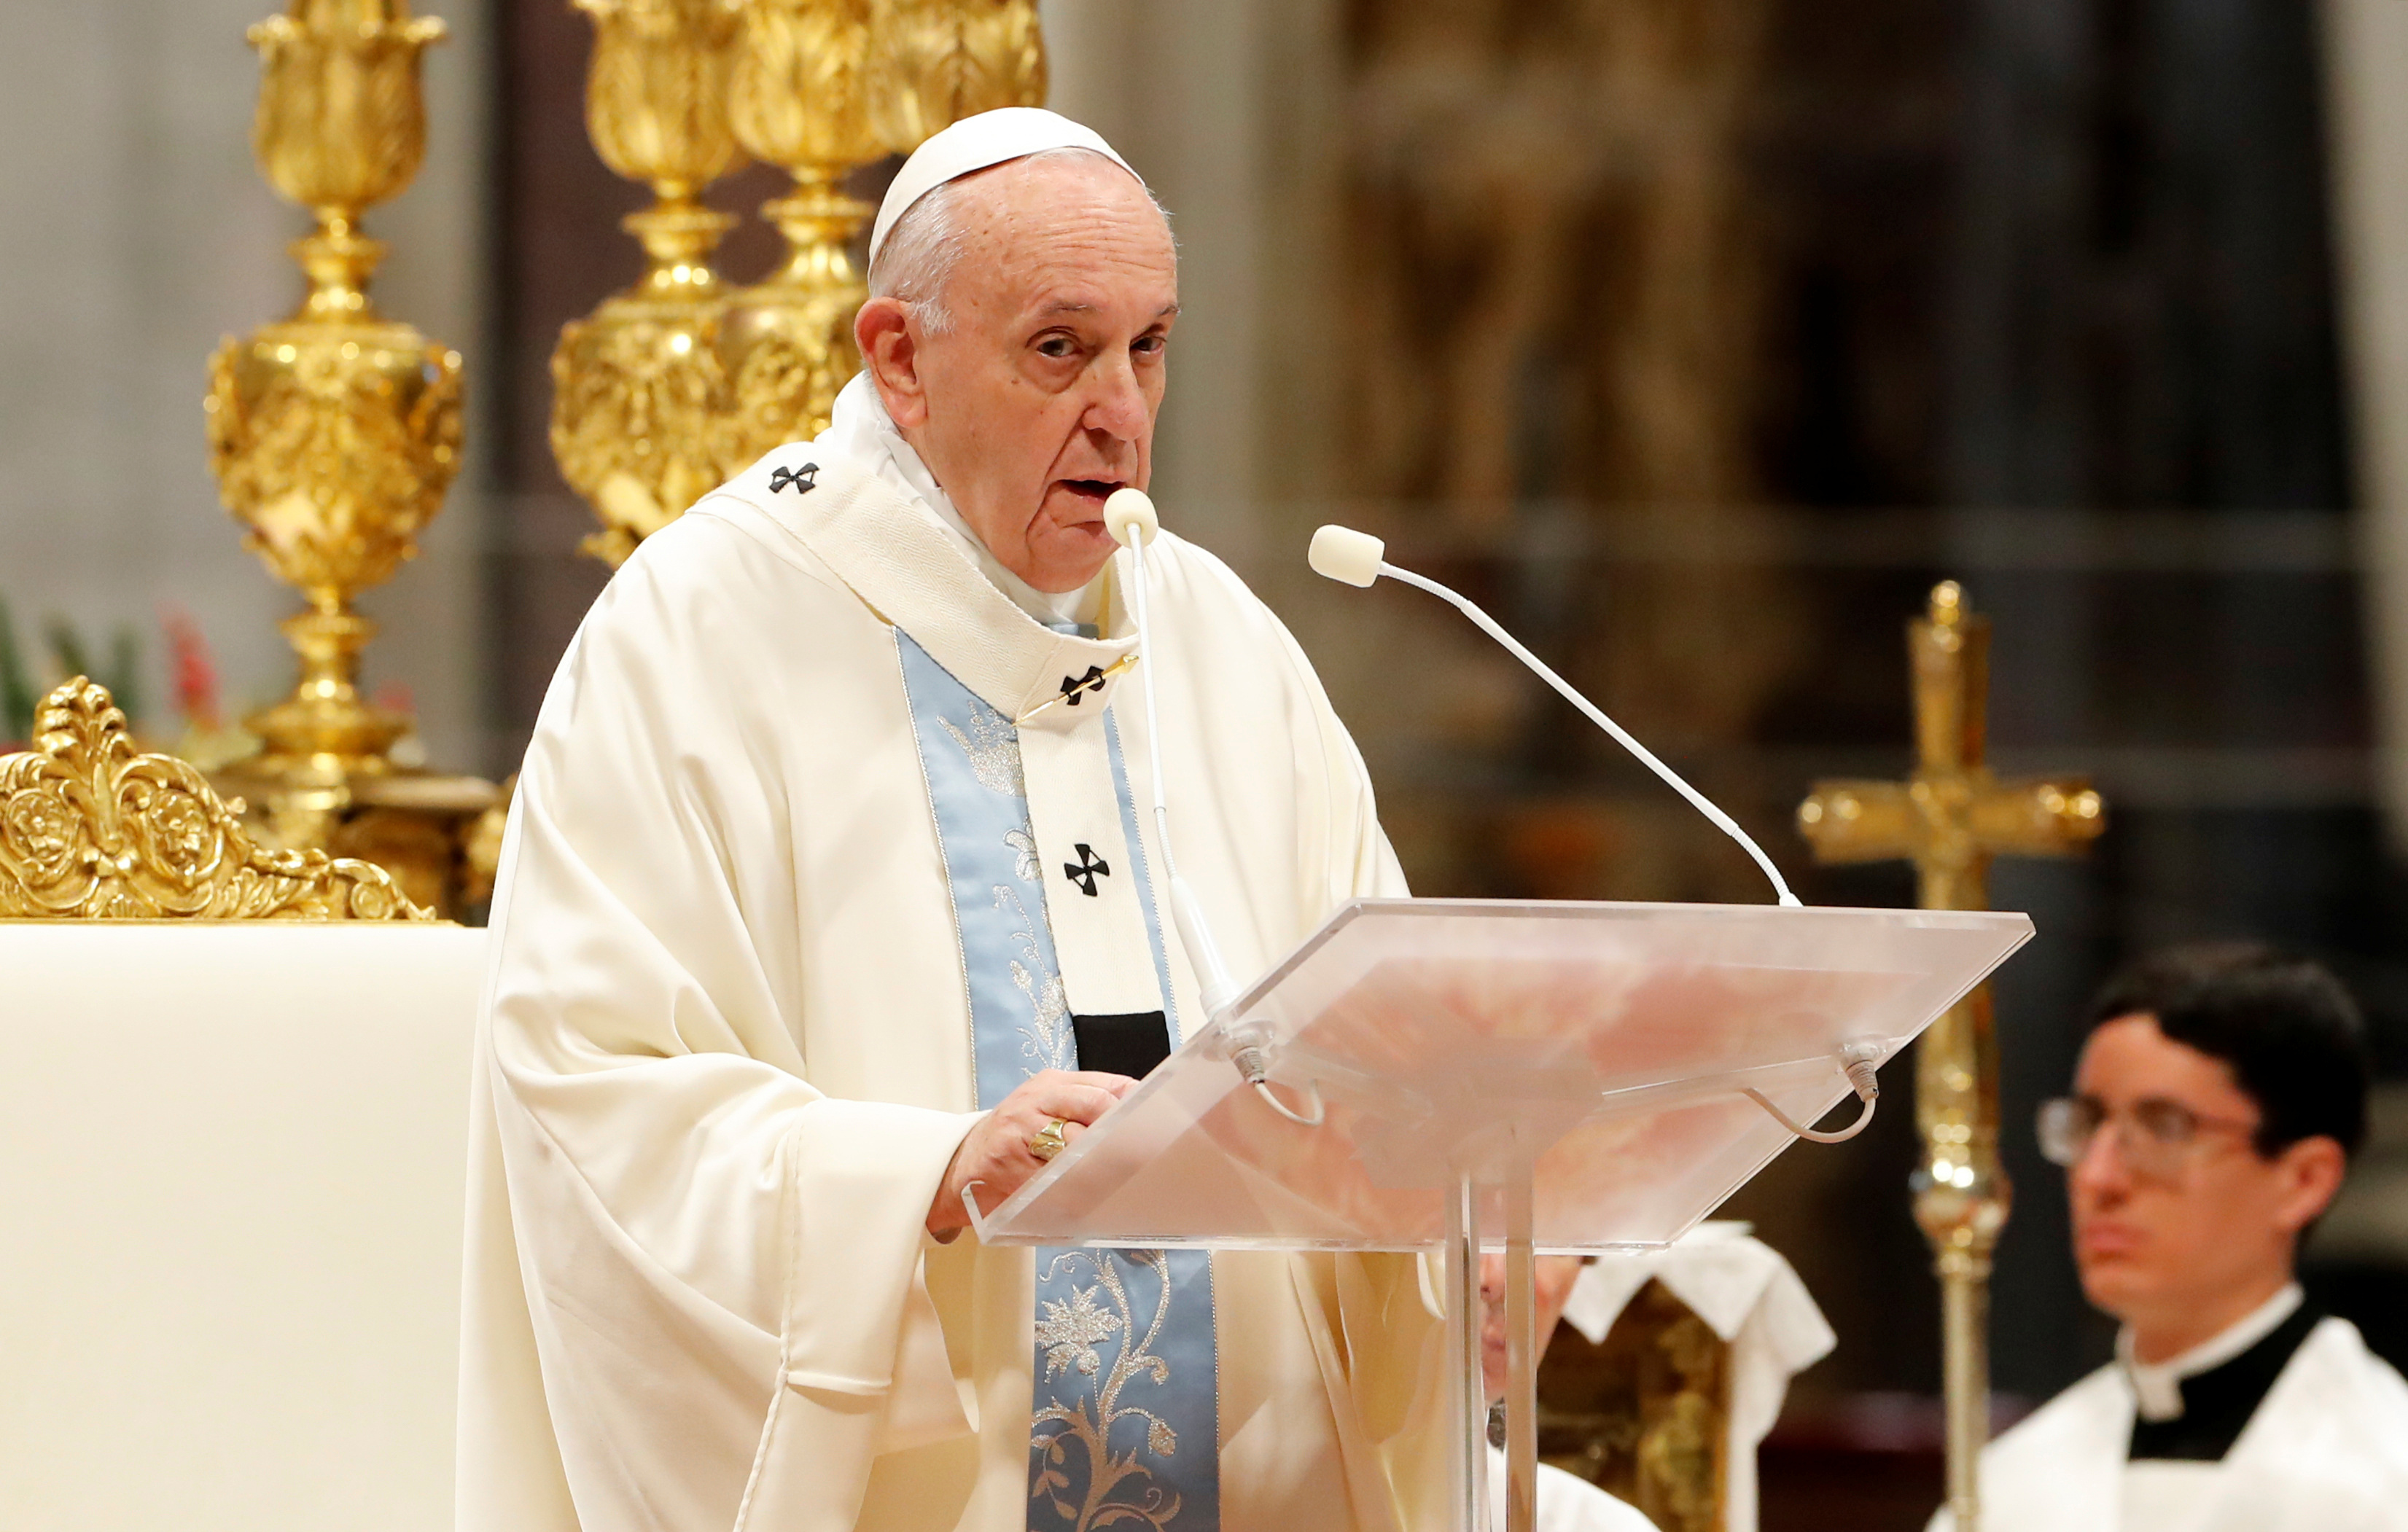 Сын папы римского. Франциск (папа Римский). Папа Римский Франциск 2013. Папа Римский Франциск 2022. Понтифик папа Римский Франциск.